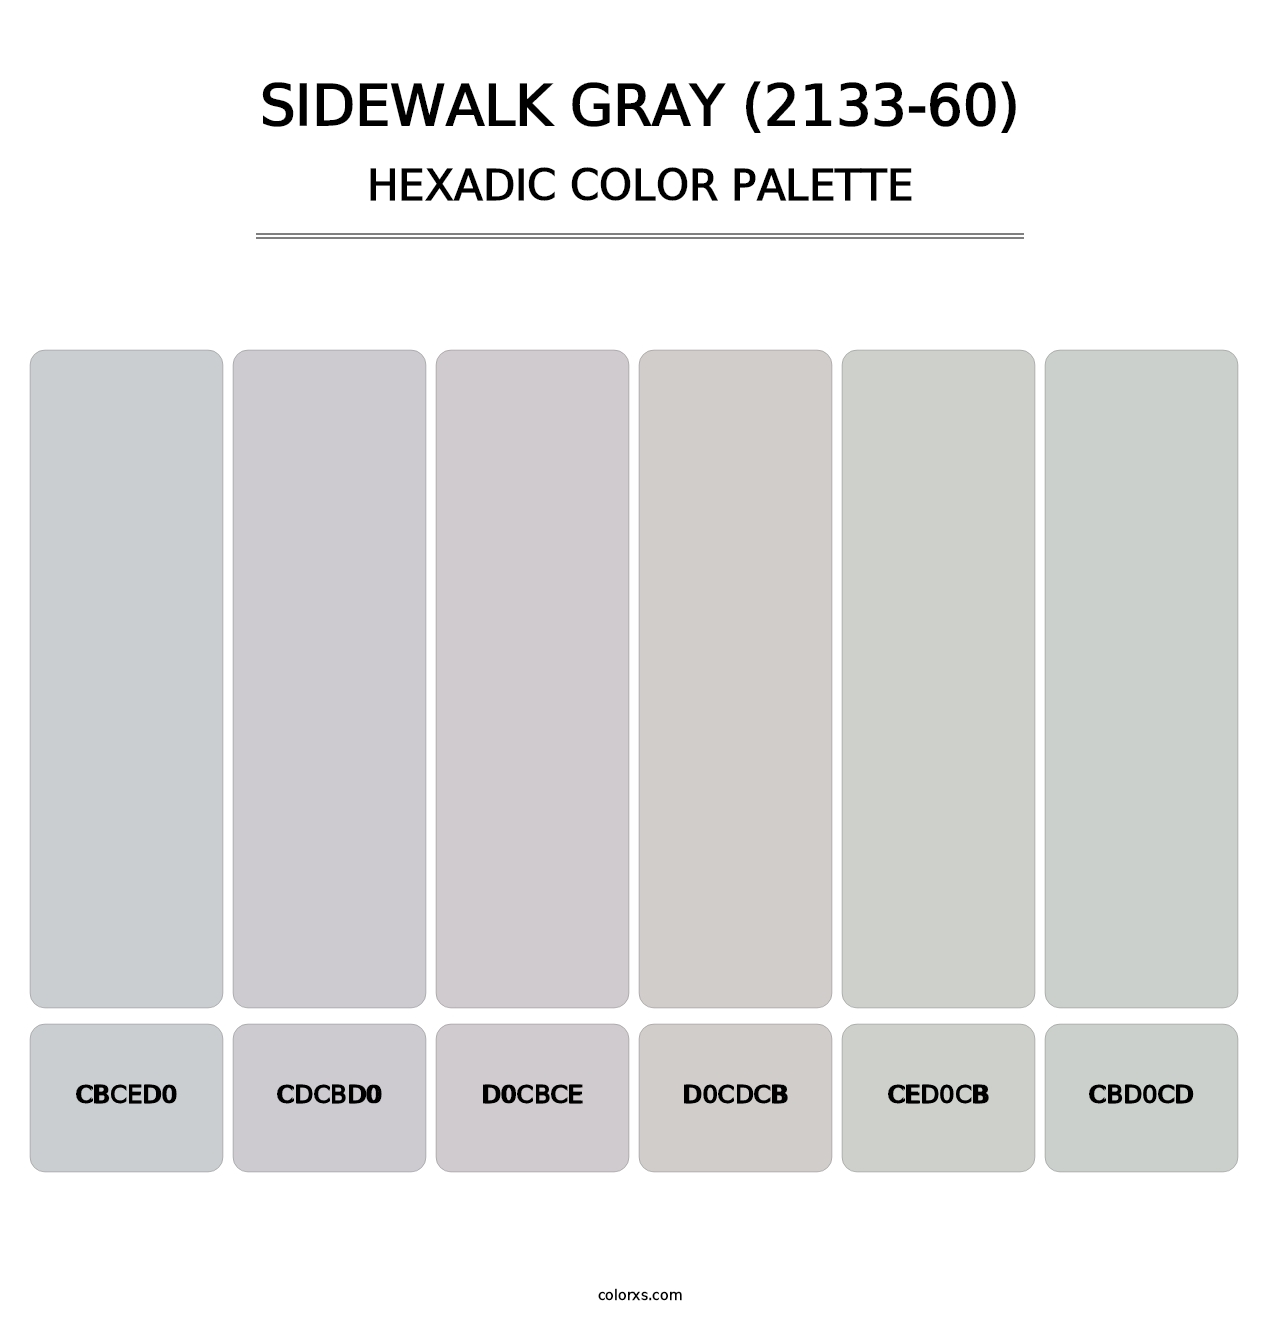 Sidewalk Gray (2133-60) - Hexadic Color Palette